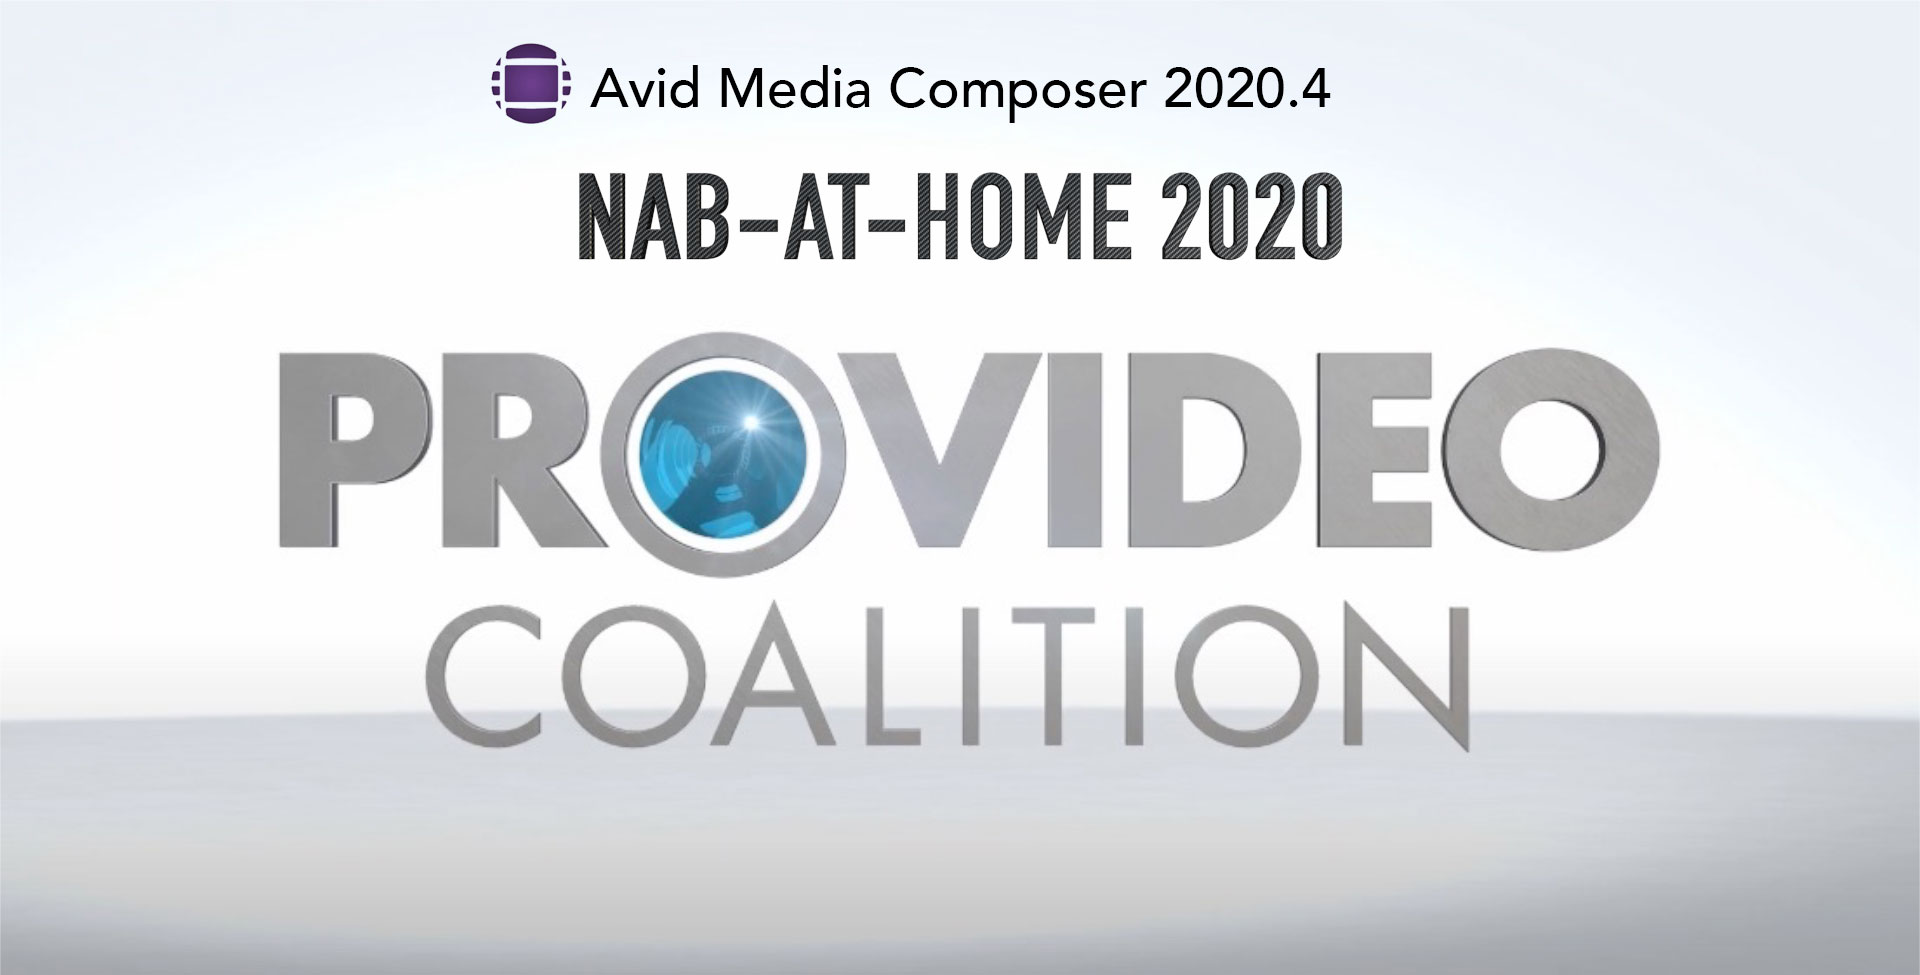 nab-at-home-2020-avid